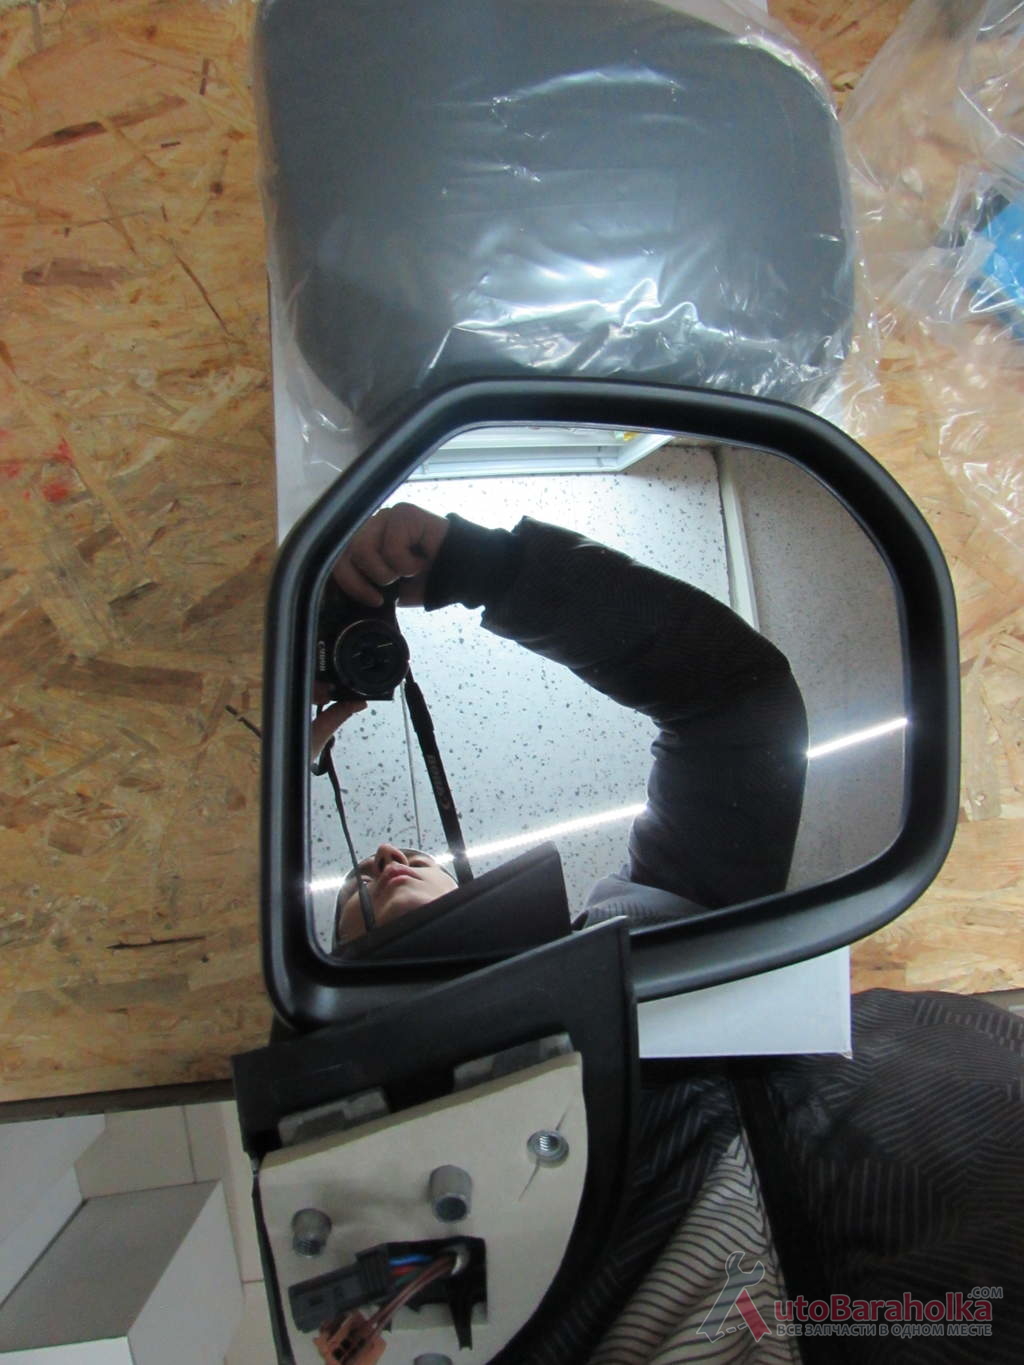 Продам новое зеркало, электрическое, выпуклое, подогрев, грунтовка. BERLINGO 08-12 Left - в наличии Ковель